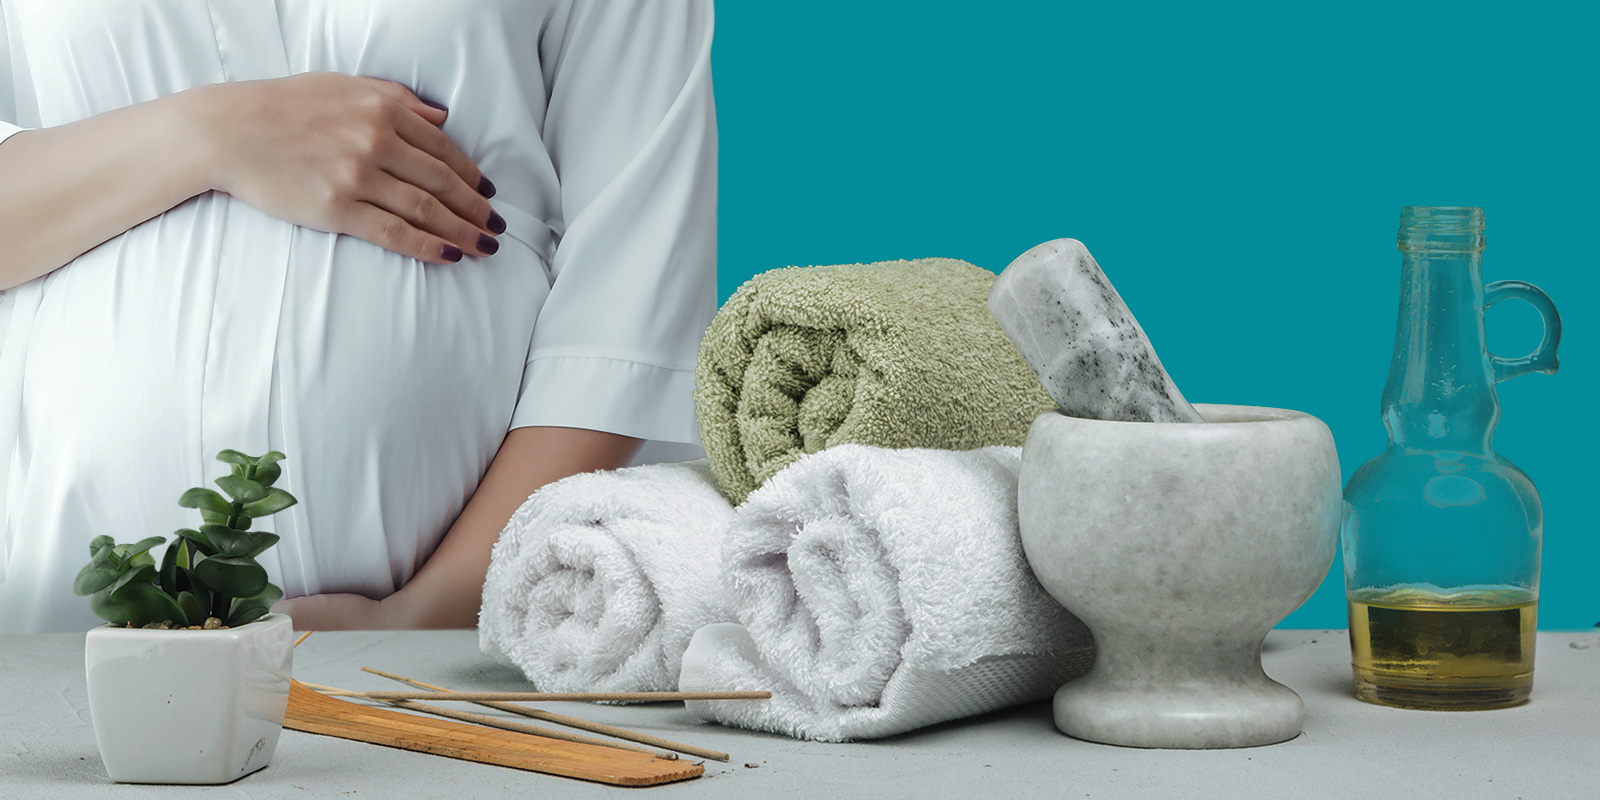 الحمام المغربي للحامل: هل هو آمن؟